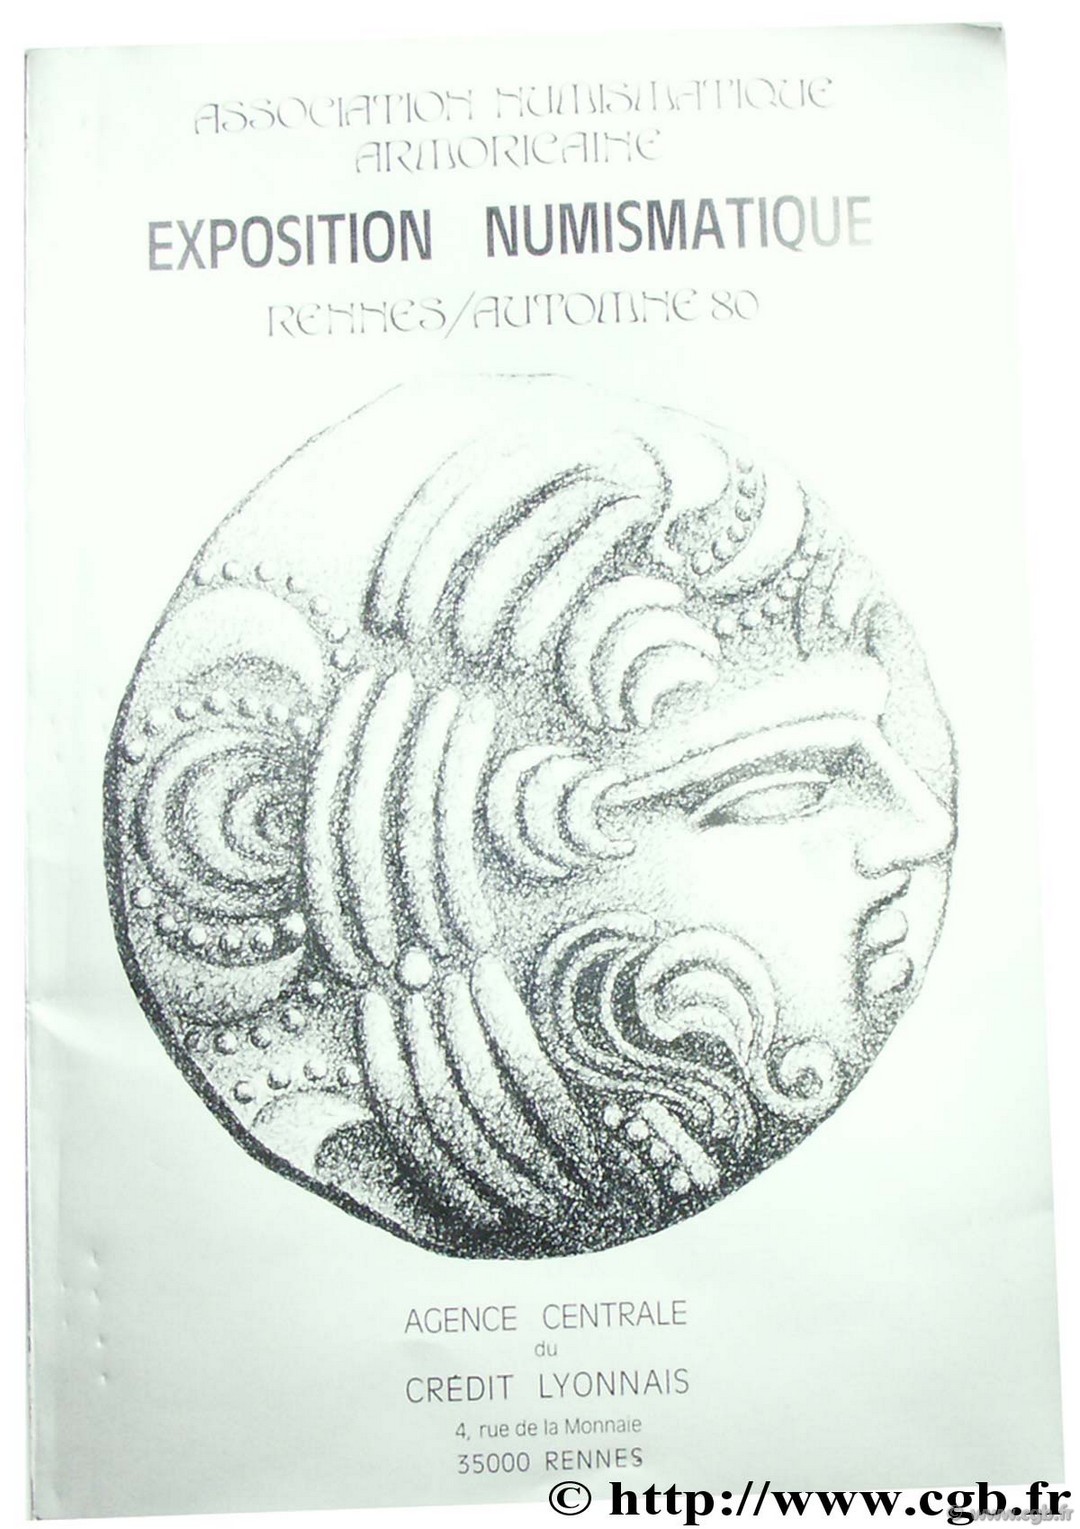 Association Numismatique Armoricaine, Exposition numismatique Rennes, Automne 1980 